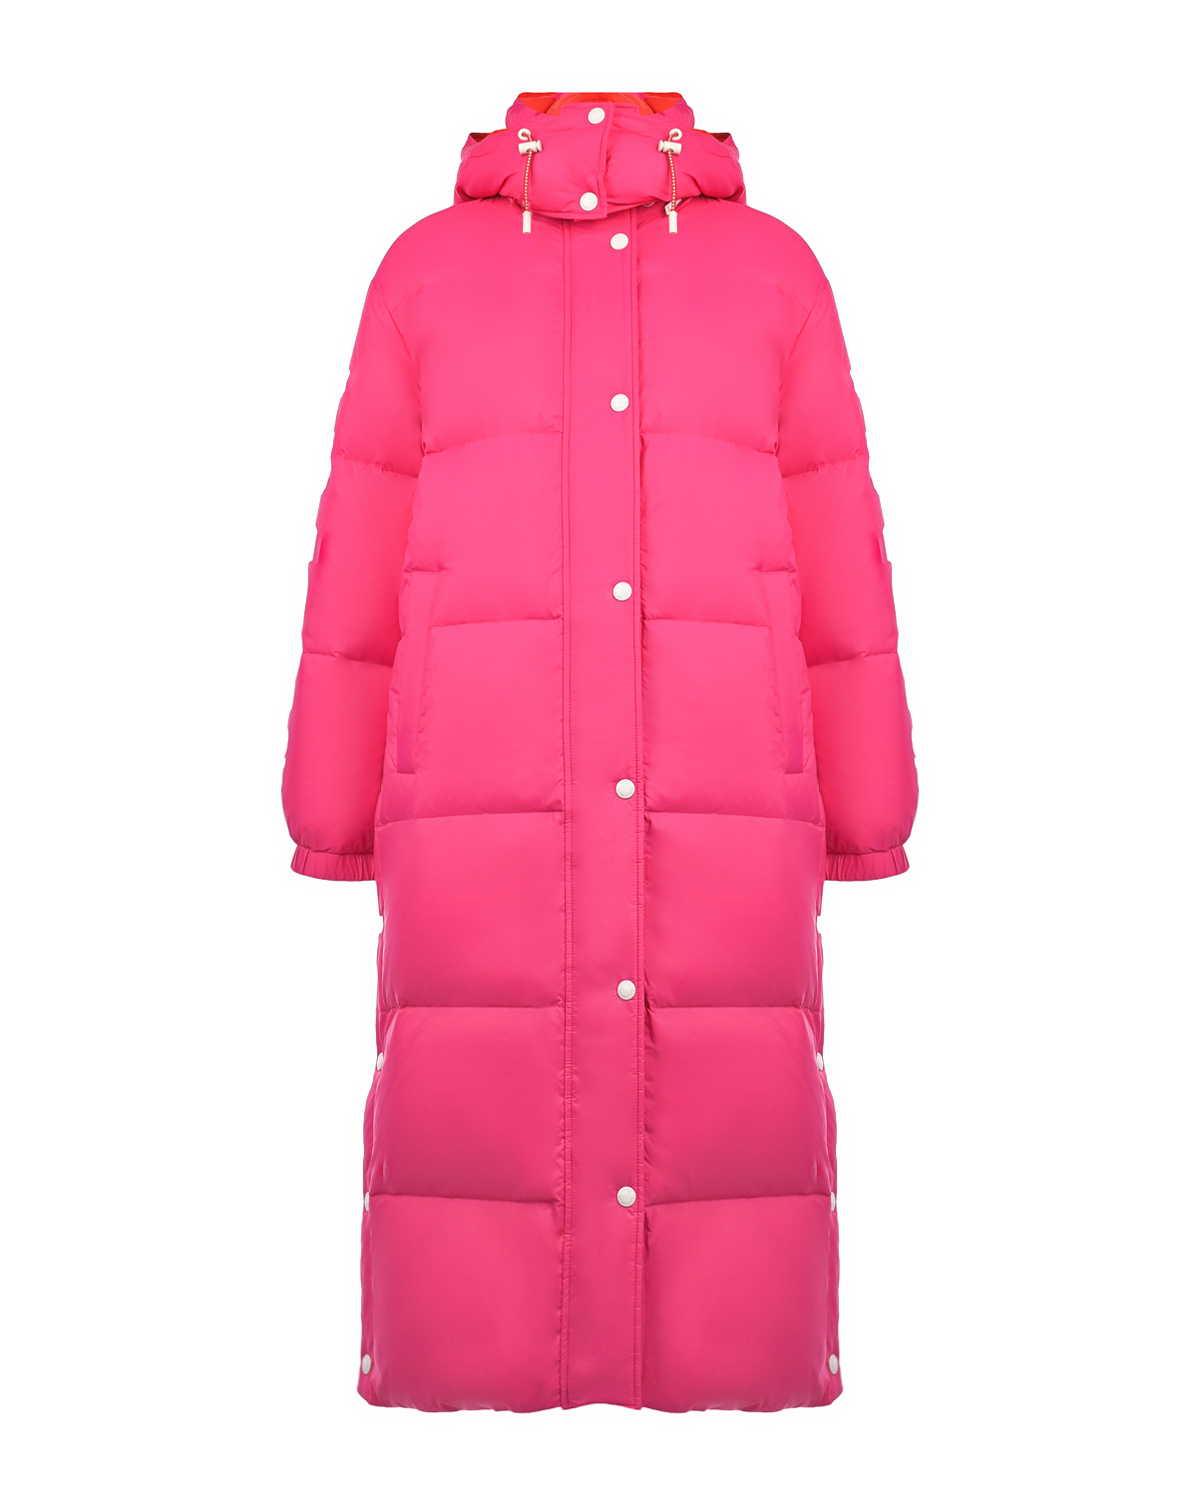 Двухстороннее пальто-пуховик, красный/розовый Yves Salomon, размер 36, цвет нет цвета